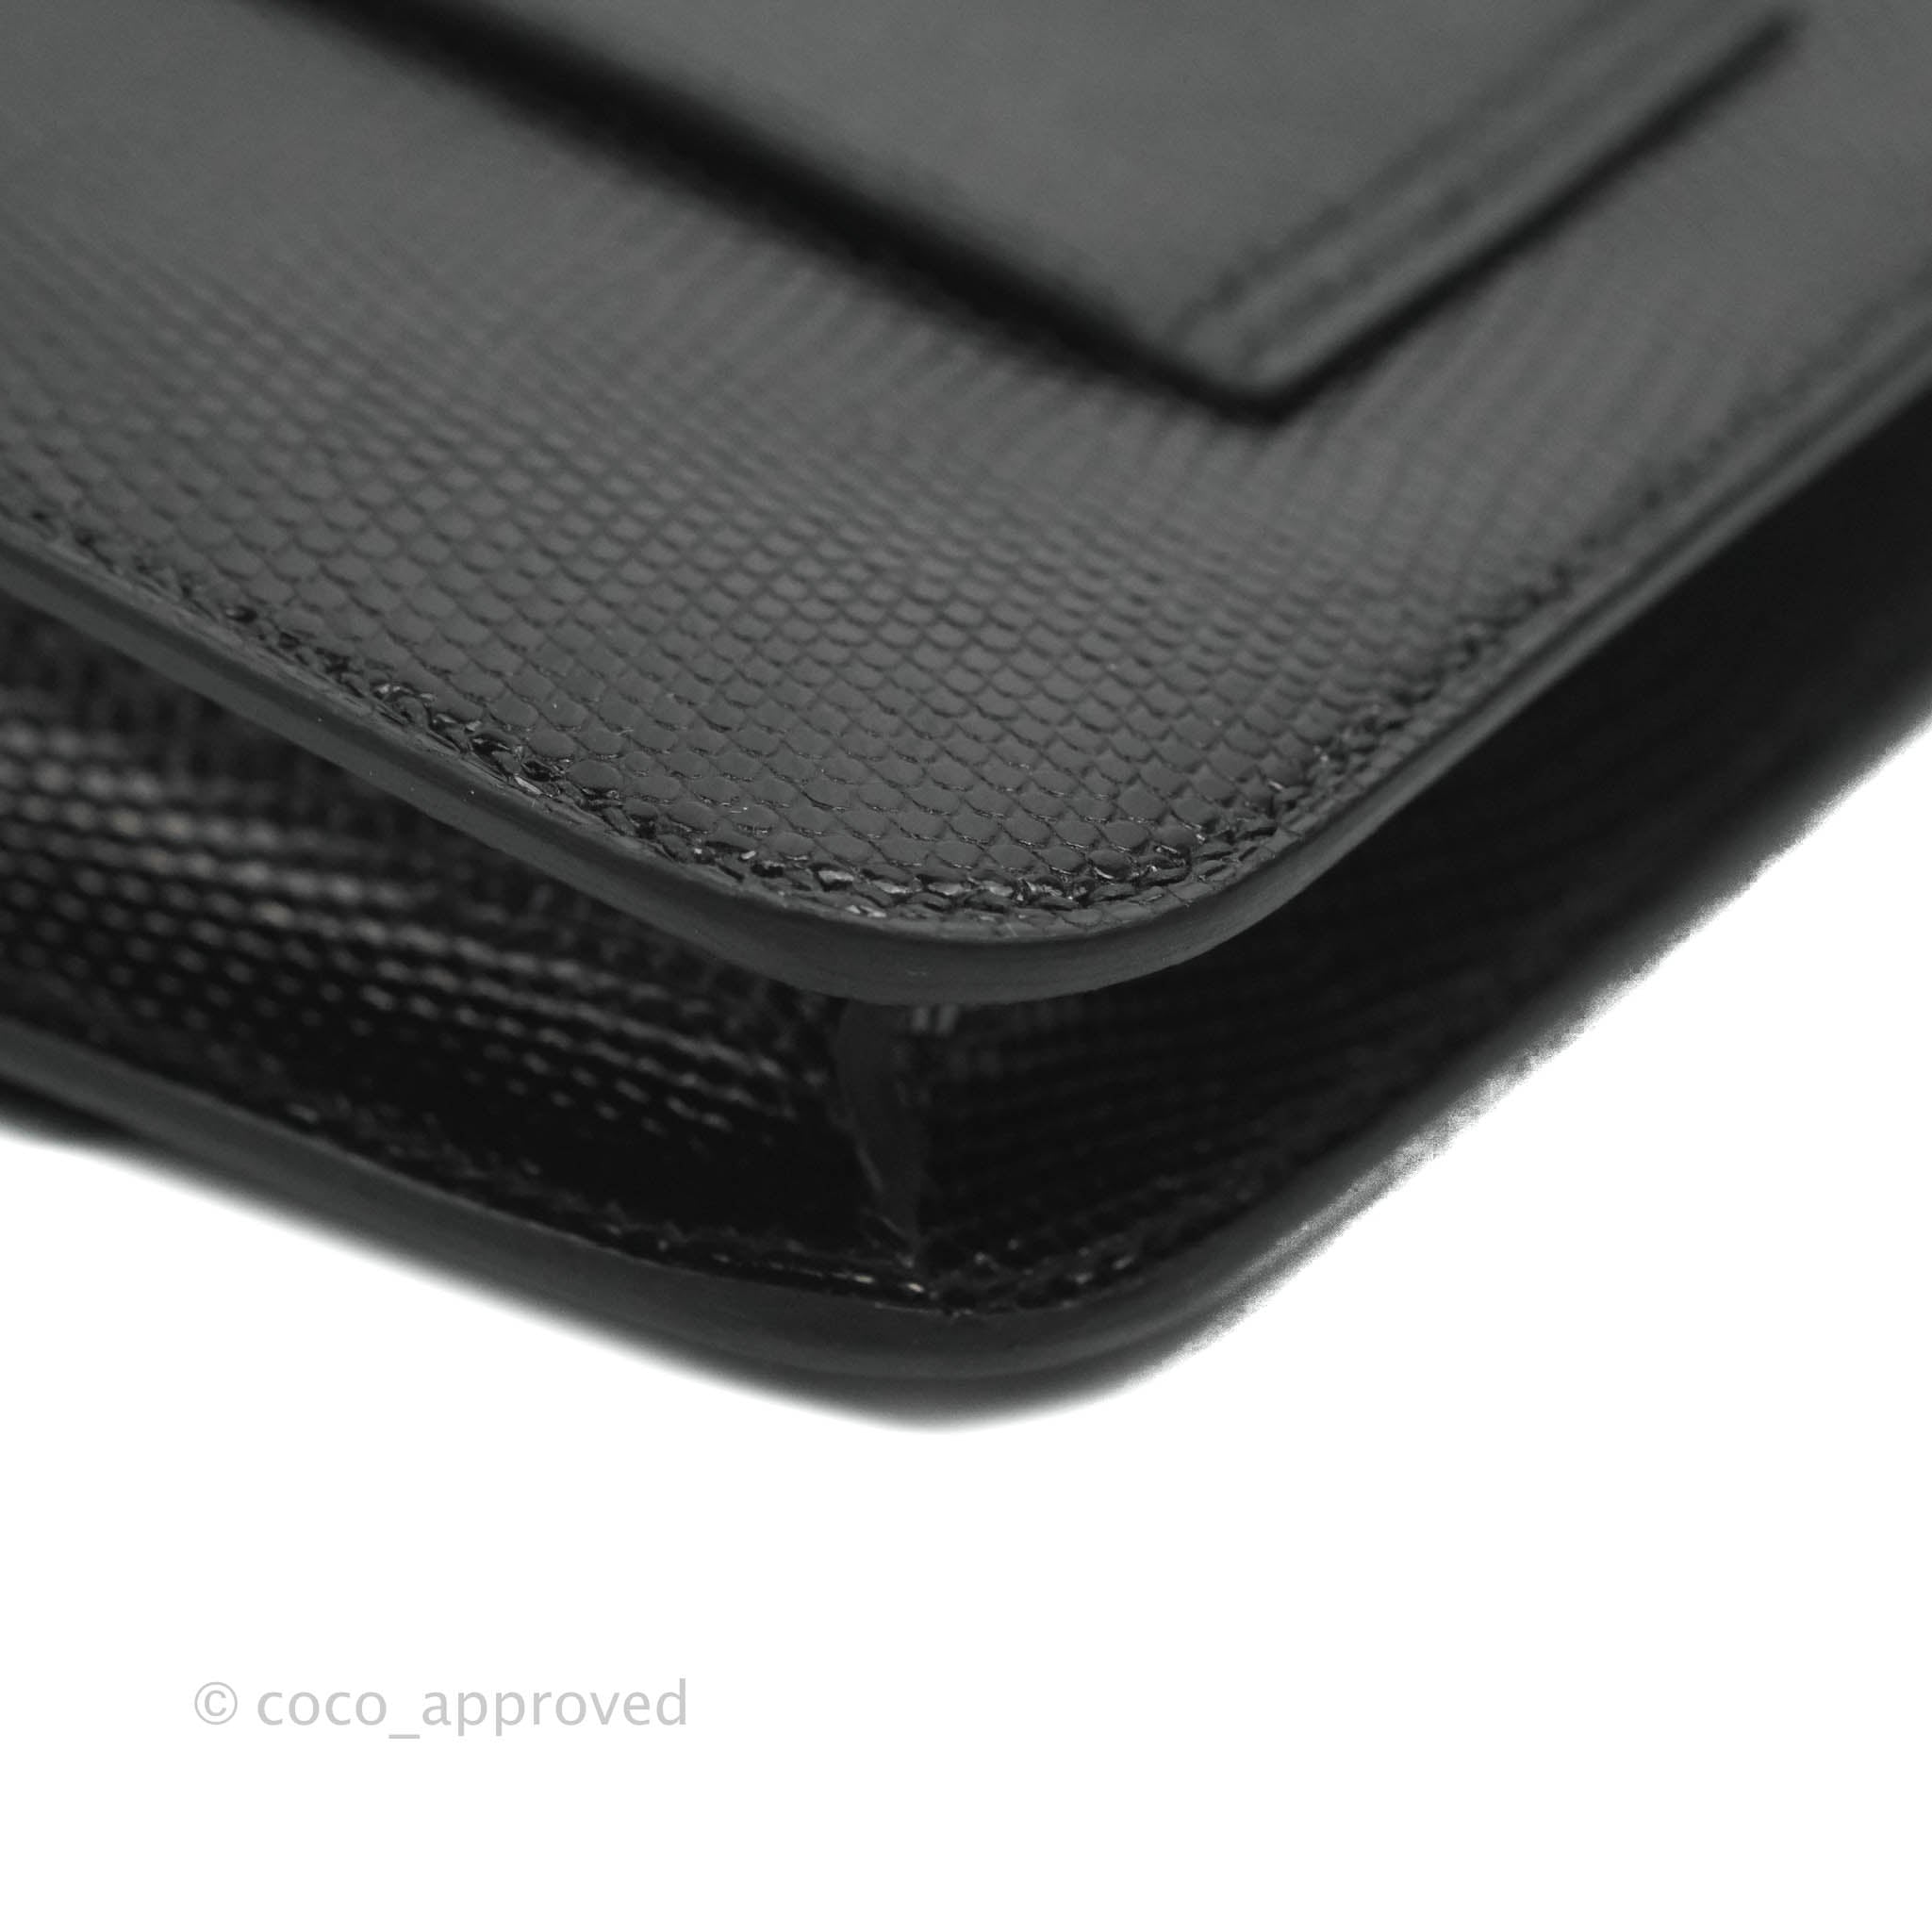 Hermes Constance Slim Wallet Belt Bag Black Lizard Rose Gold Hardware –  Mightychic